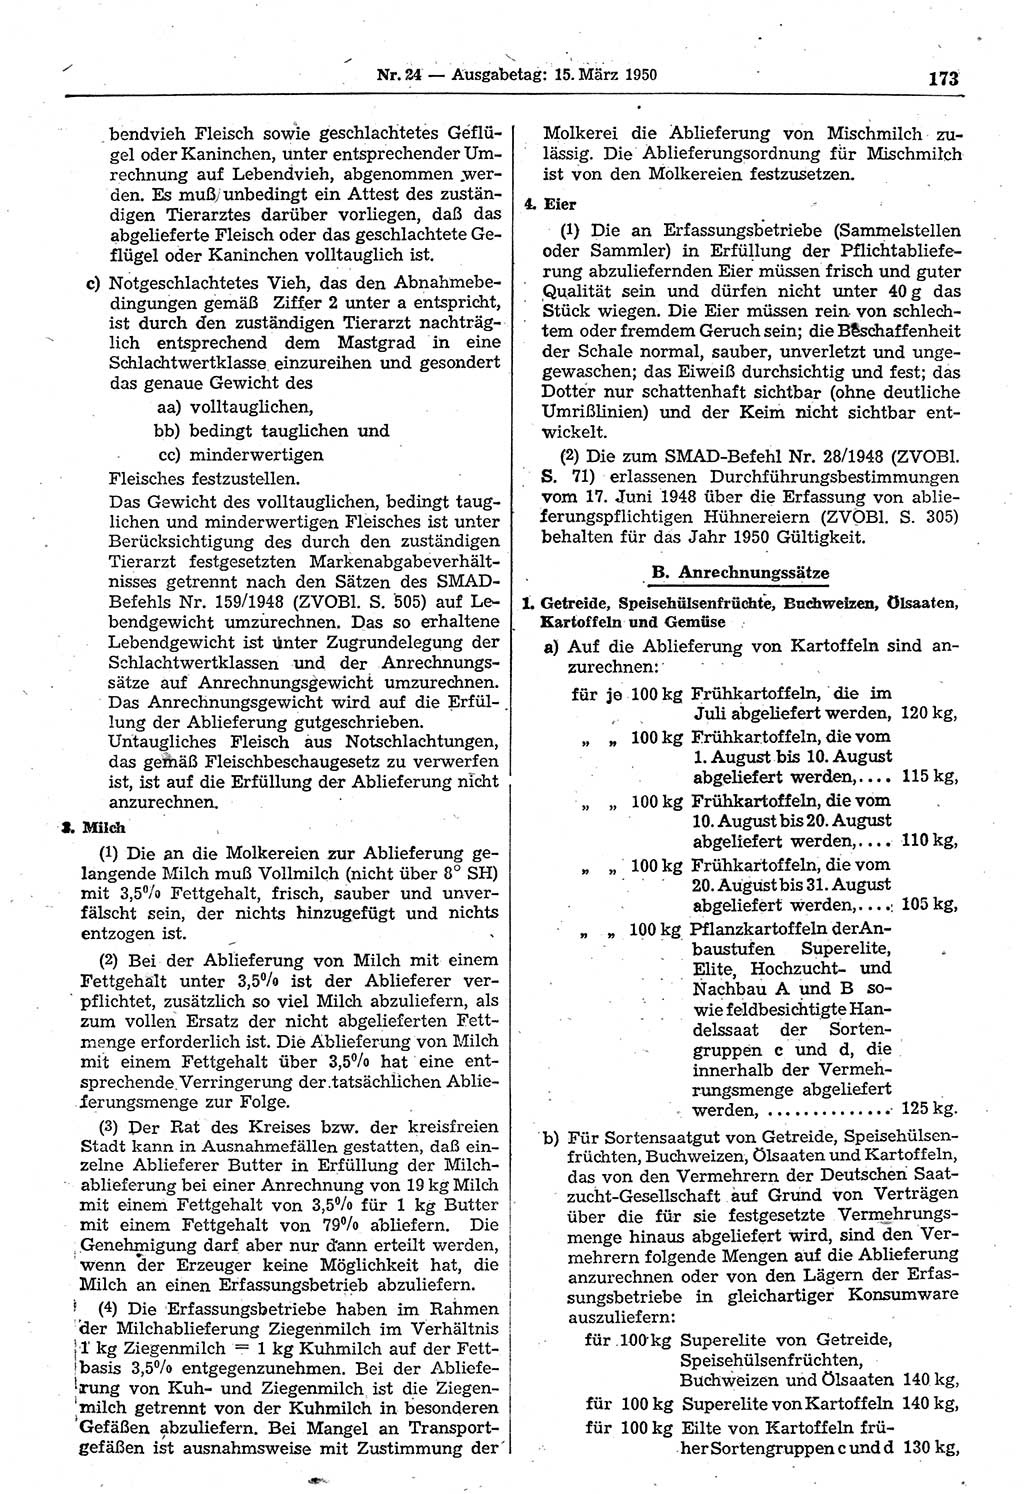 Gesetzblatt (GBl.) der Deutschen Demokratischen Republik (DDR) 1950, Seite 173 (GBl. DDR 1950, S. 173)